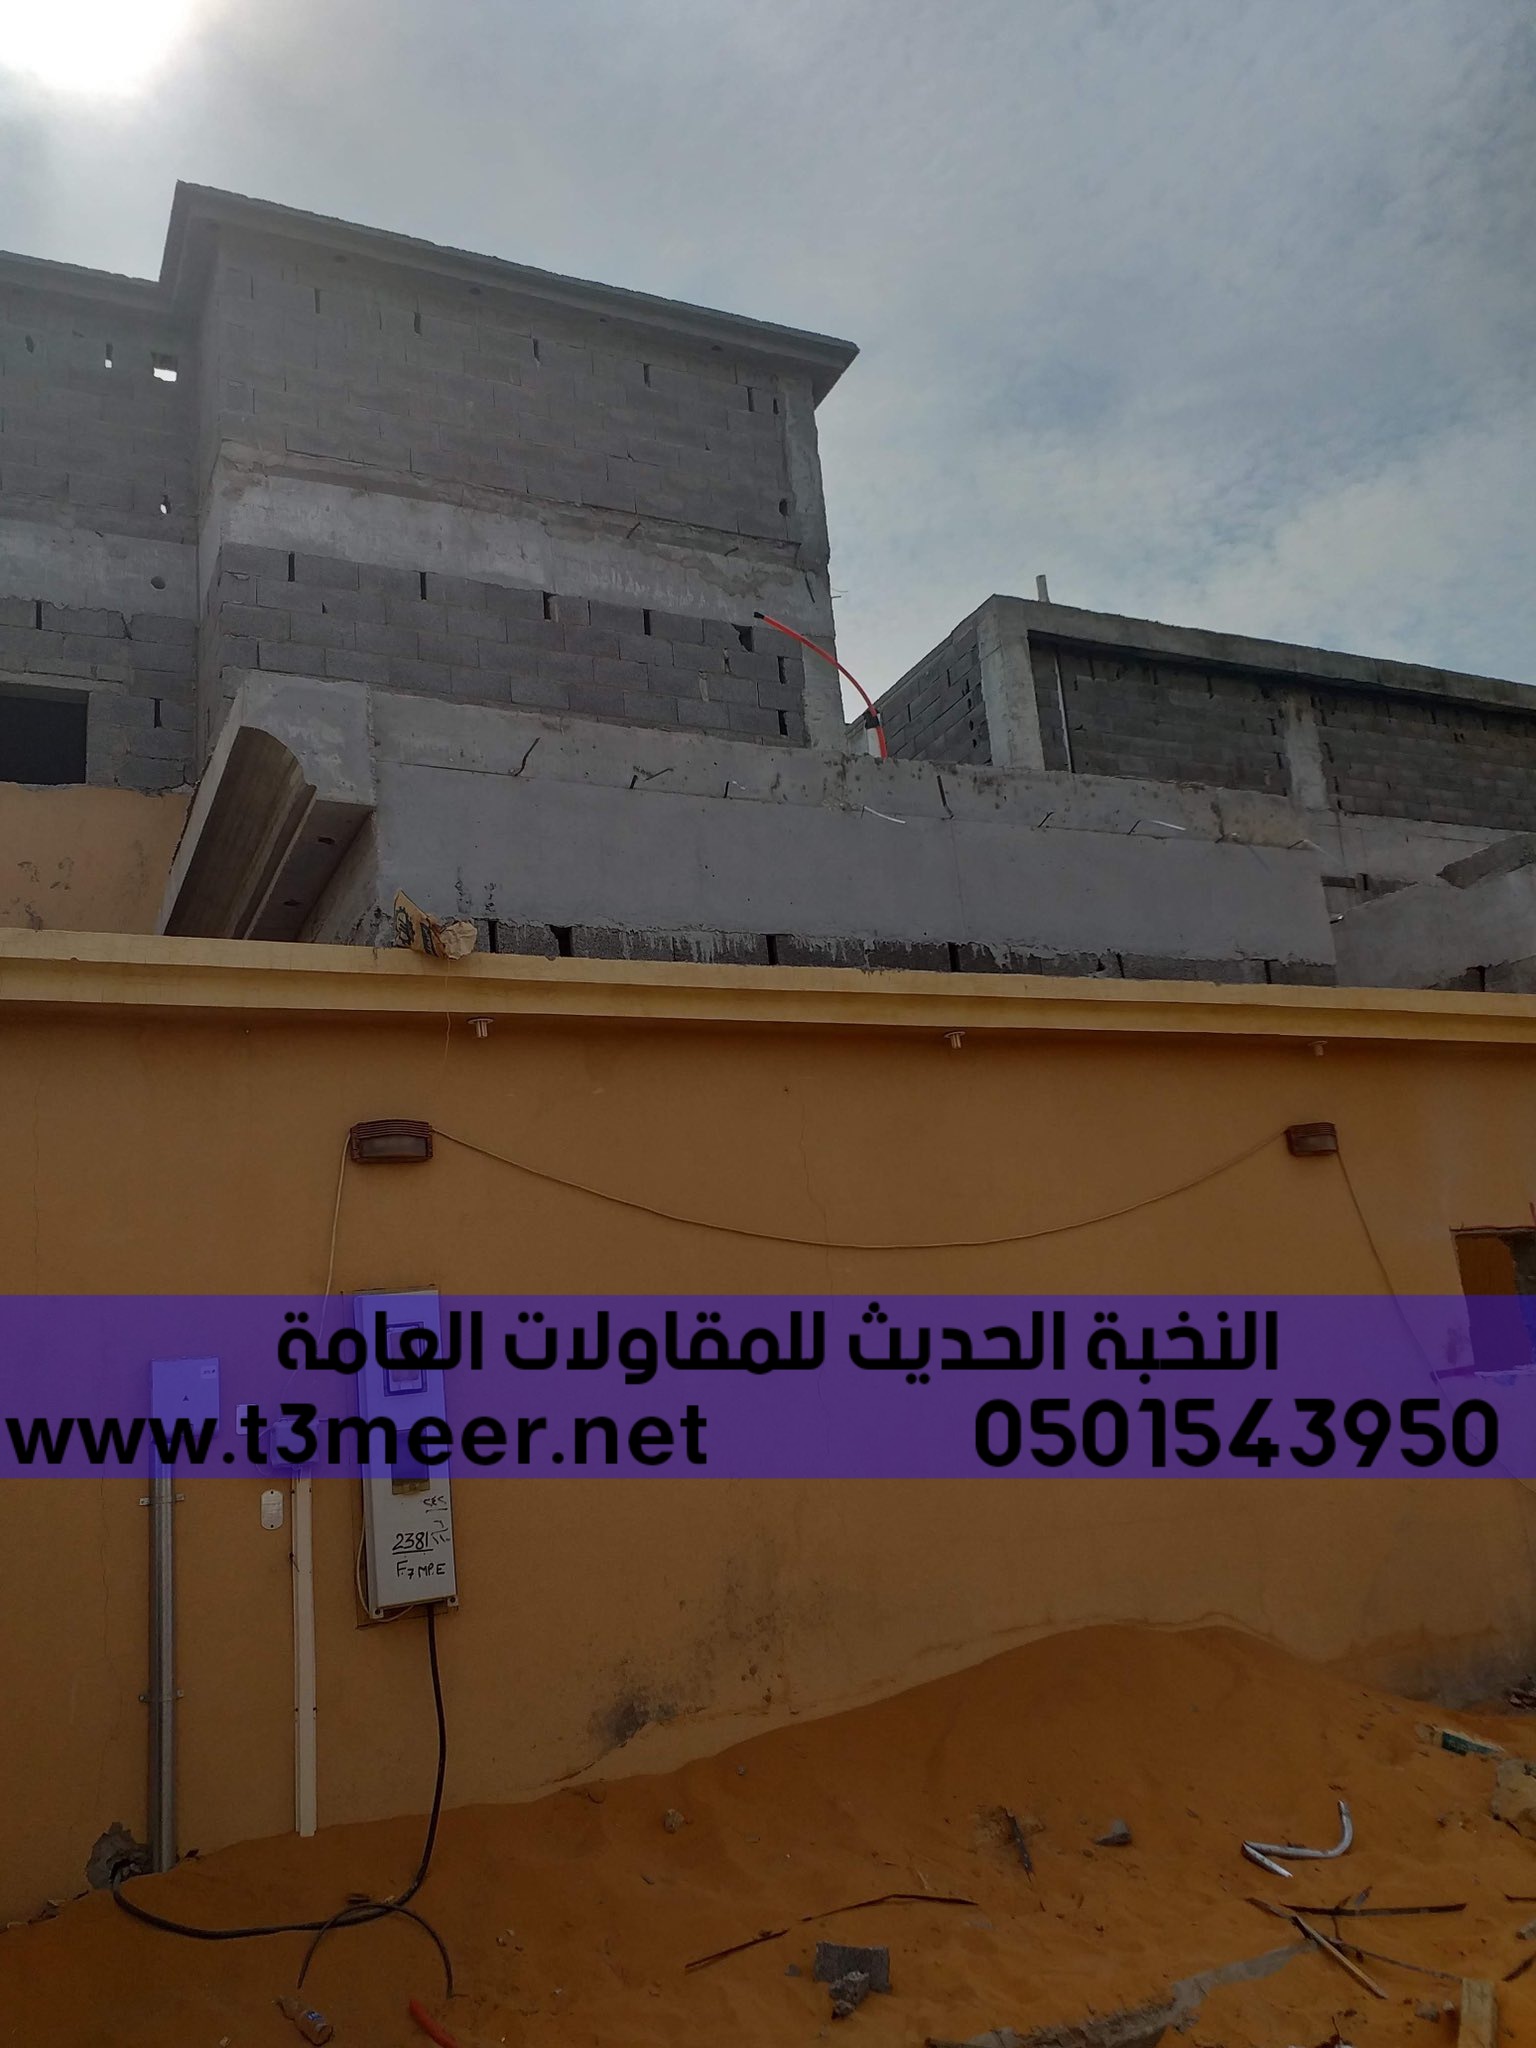 بناء مجلس و ملحق خارجي في جدة,0501543950 P_2603agbf06